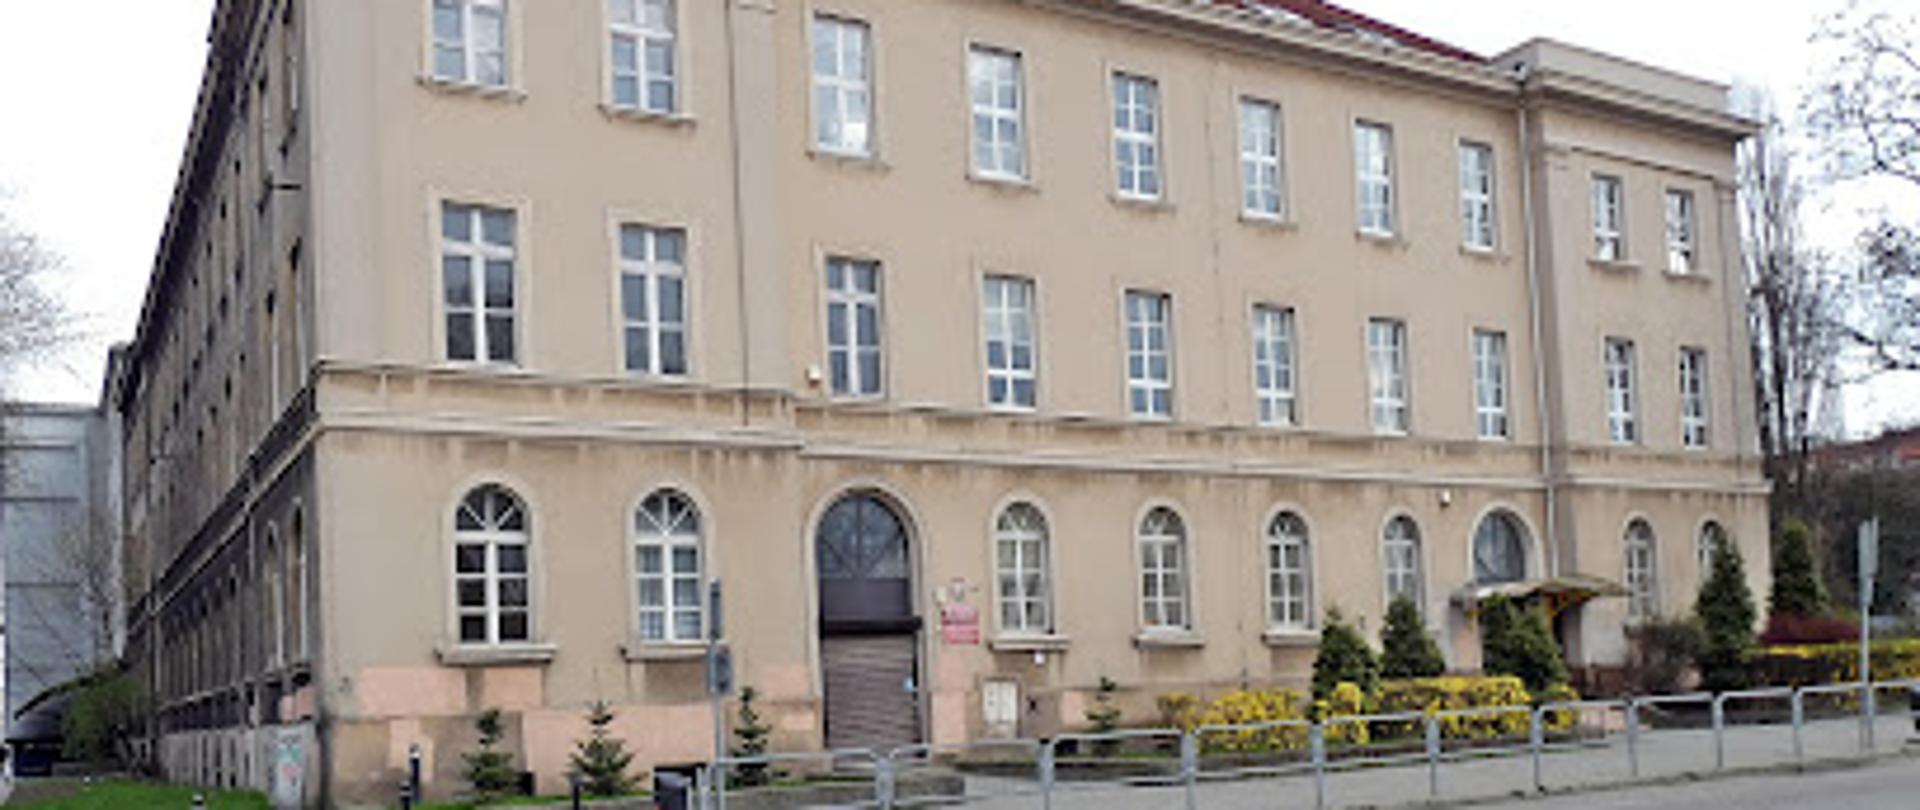 zdjęcie budynku od strony wejścia POSM I stopnia przy ul. Dąbrówki 9 w Katowicach